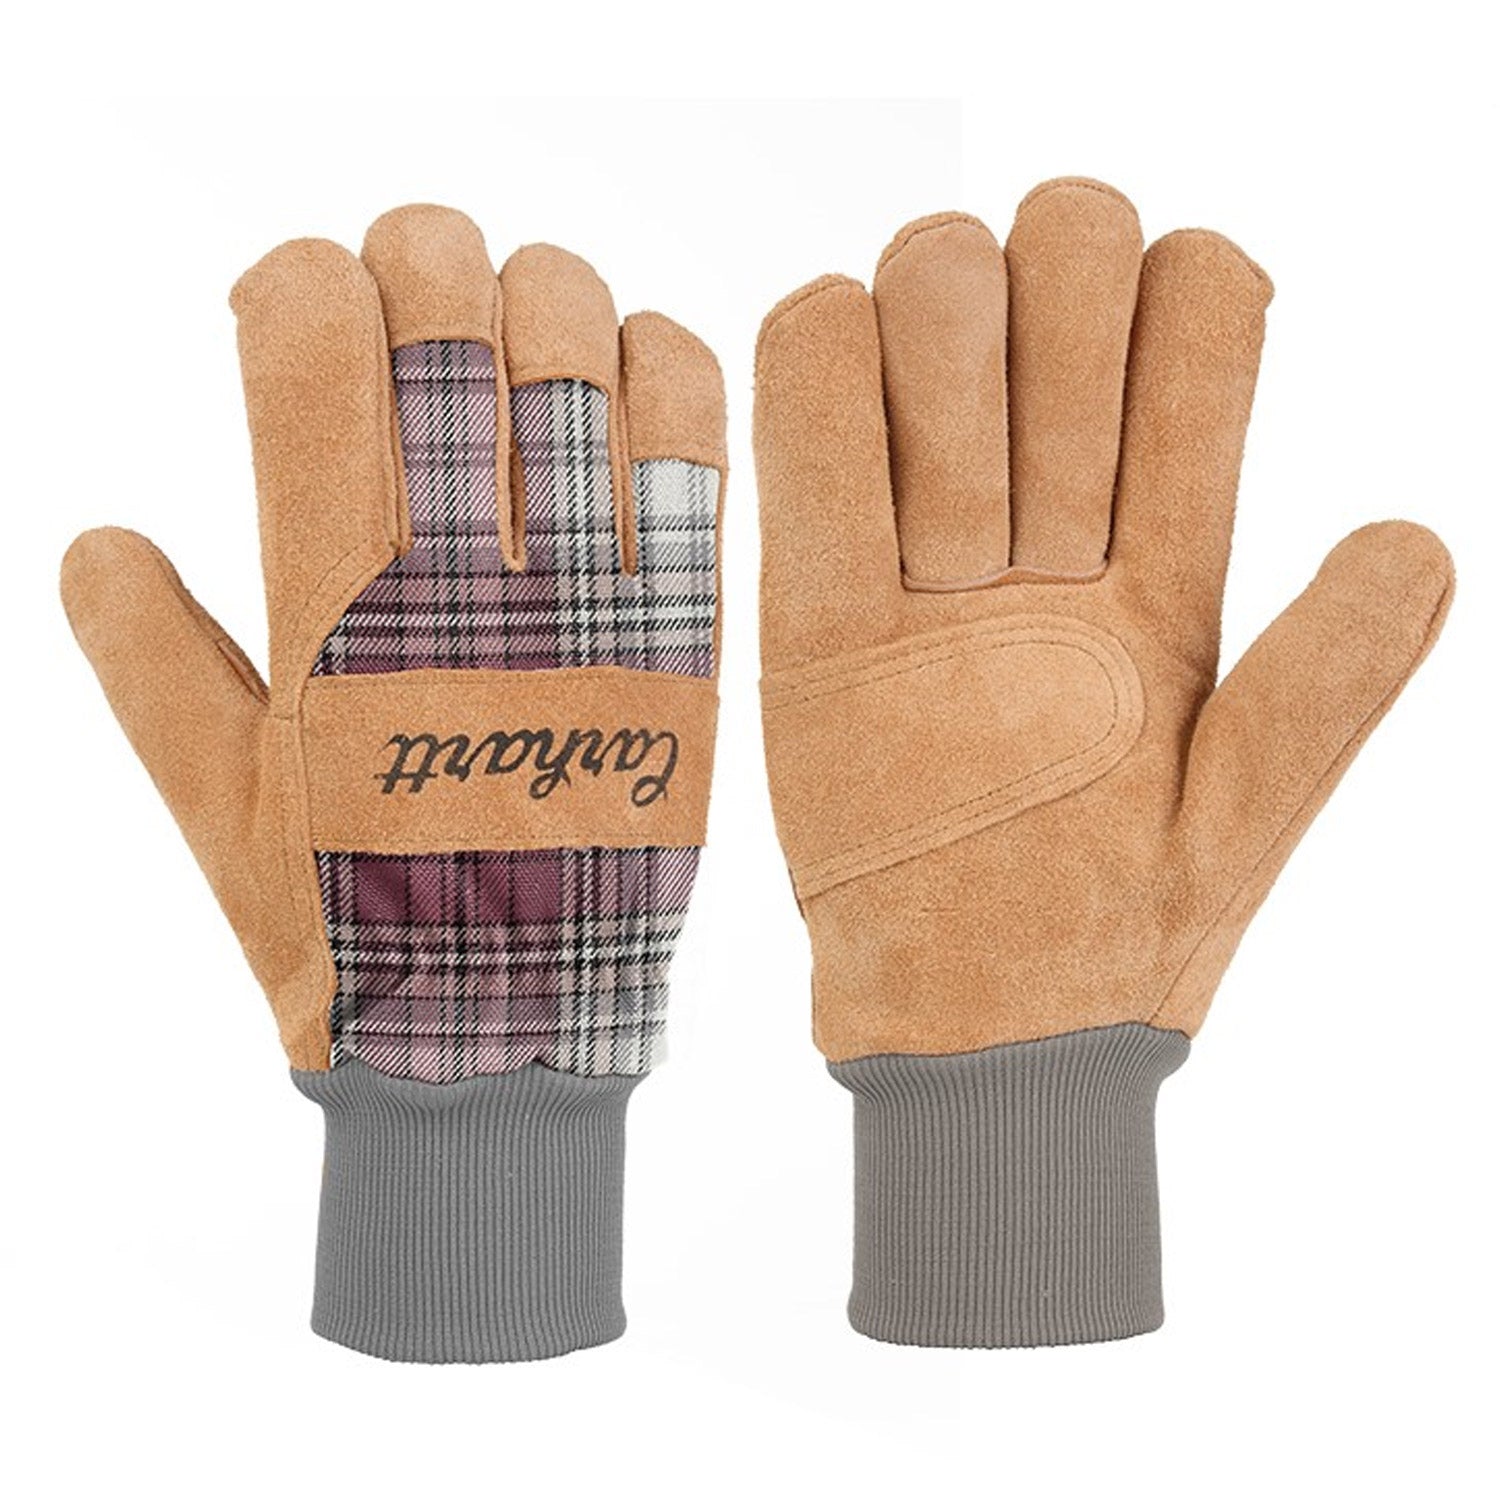 Carhartt Women's Suede Plaid Glove - Work World - Workwear, Work Boots, Safety Gear